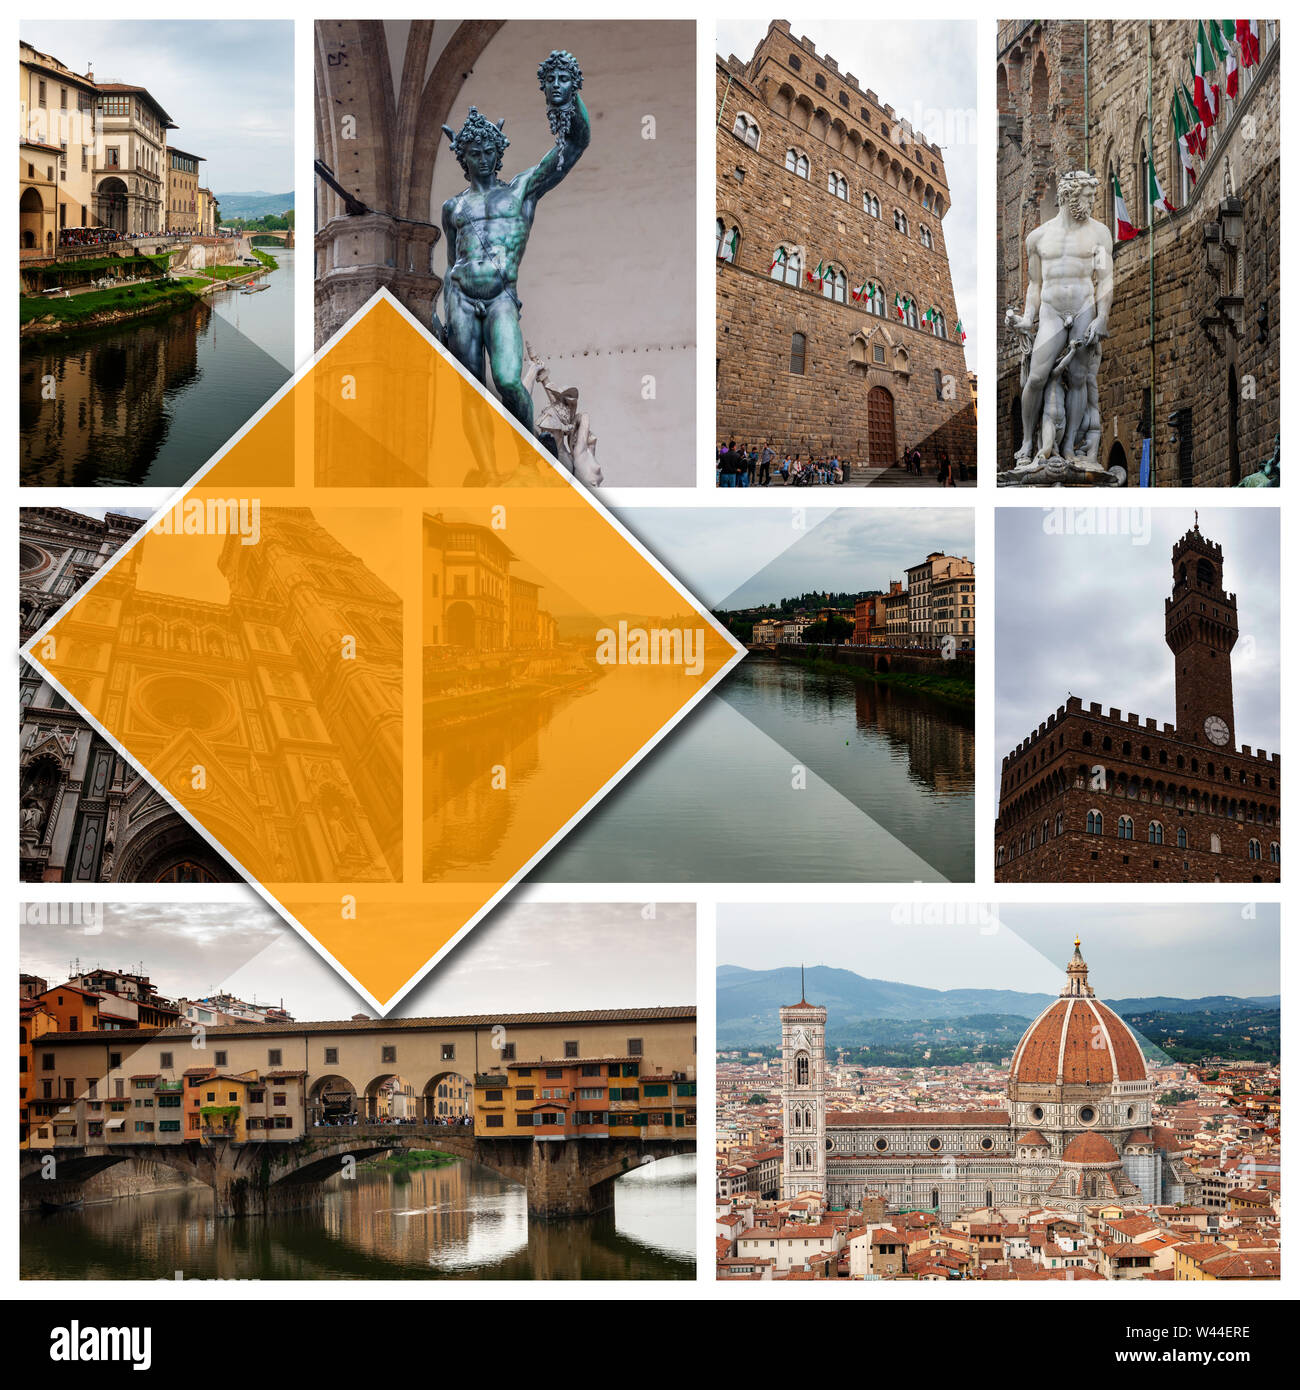 Collage Bilder aus Florenz, Italien, im 1:1 Format. UNESCO Weltkulturerbe und Sitz der italienischen Renaissance, reich an Monumenten und Kunstwerken. Stockfoto